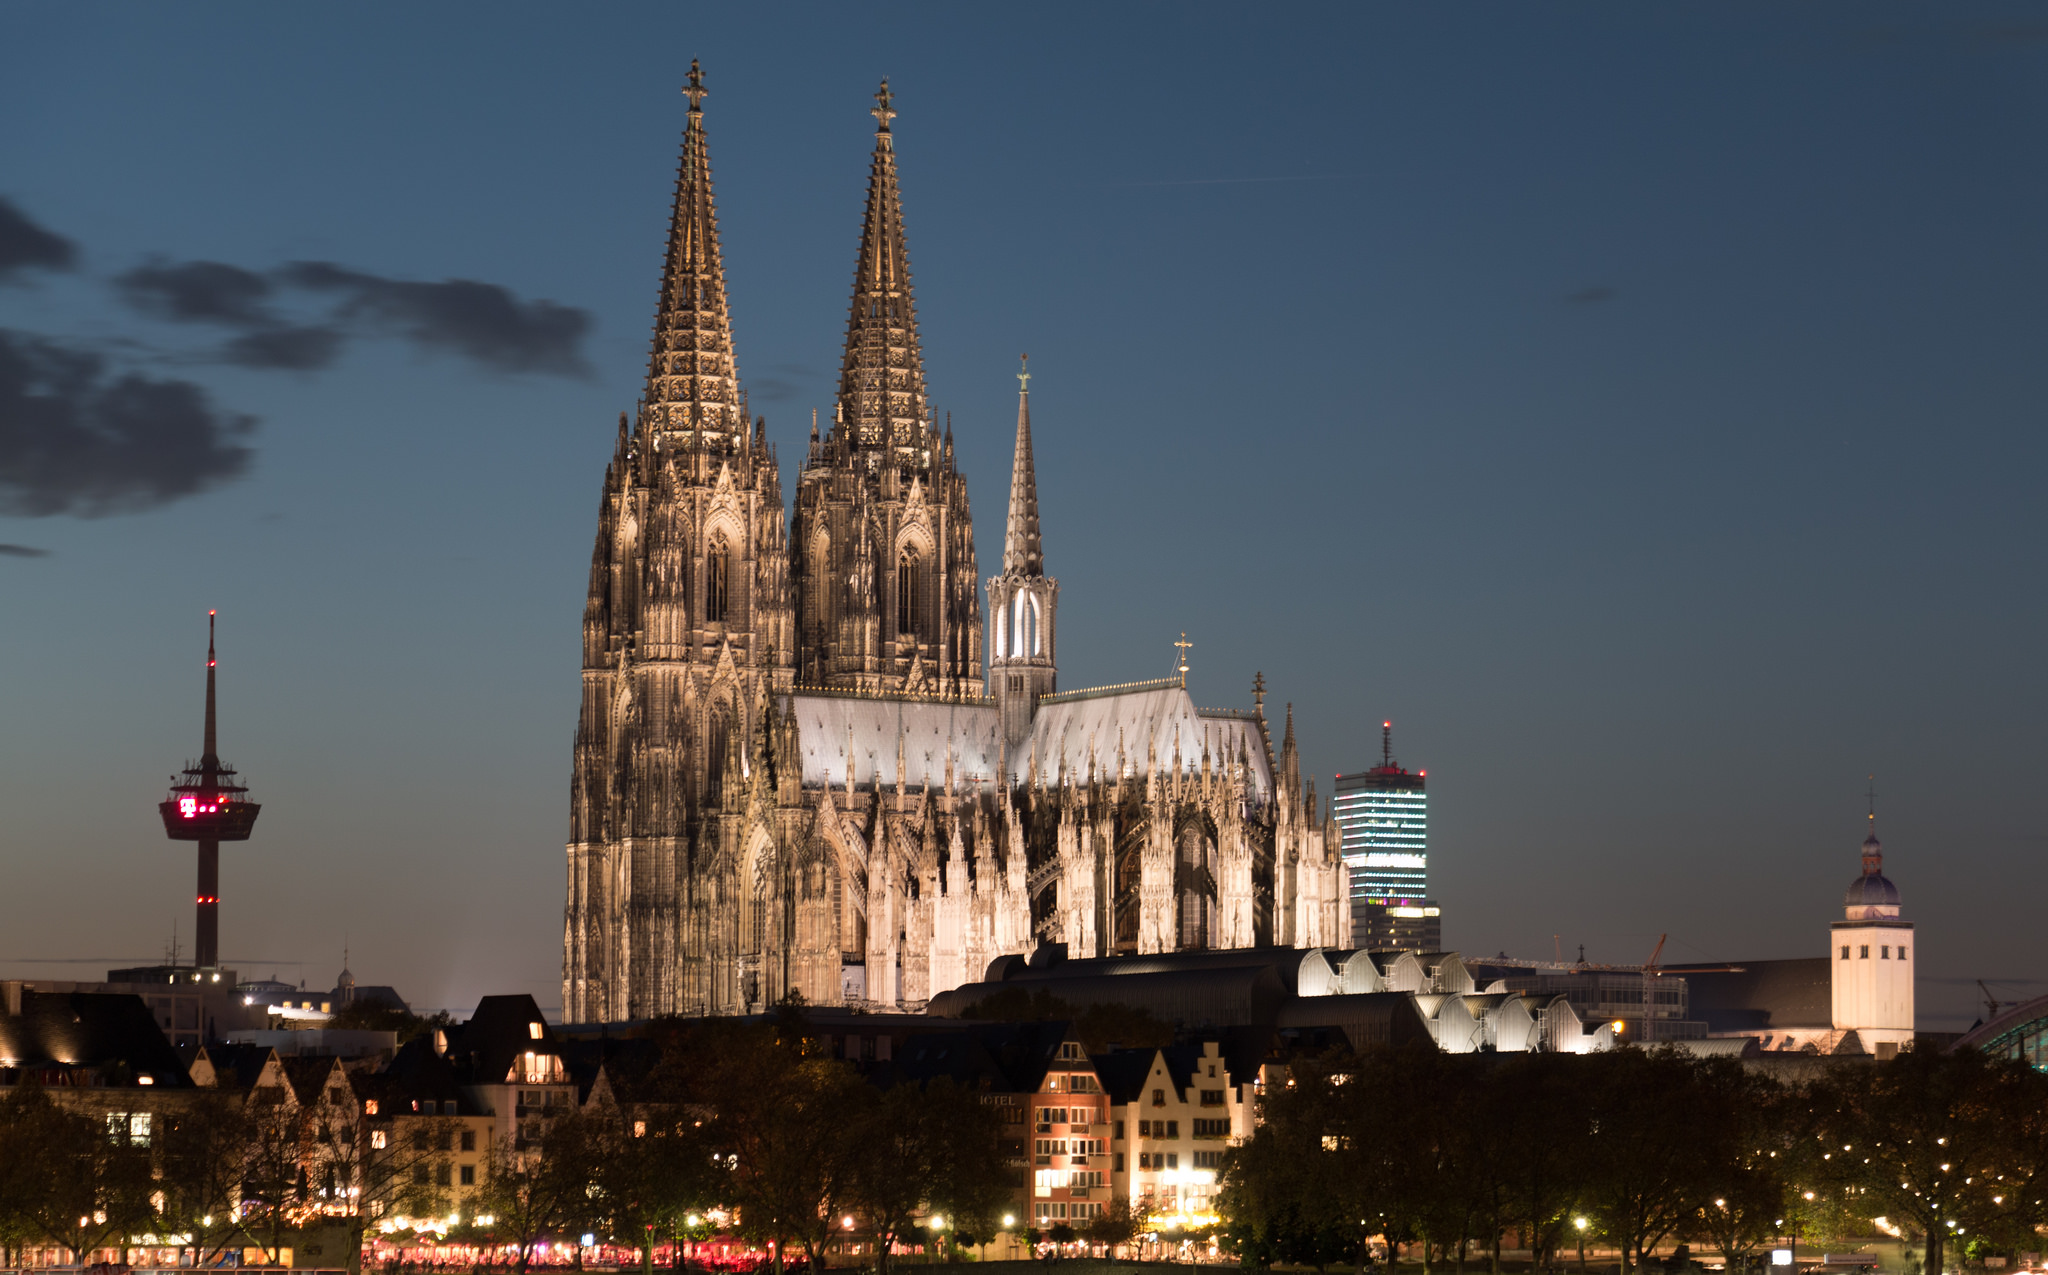 科隆大教堂,历经二战大轰炸,竟幸存下来,现今是德国地标性建筑